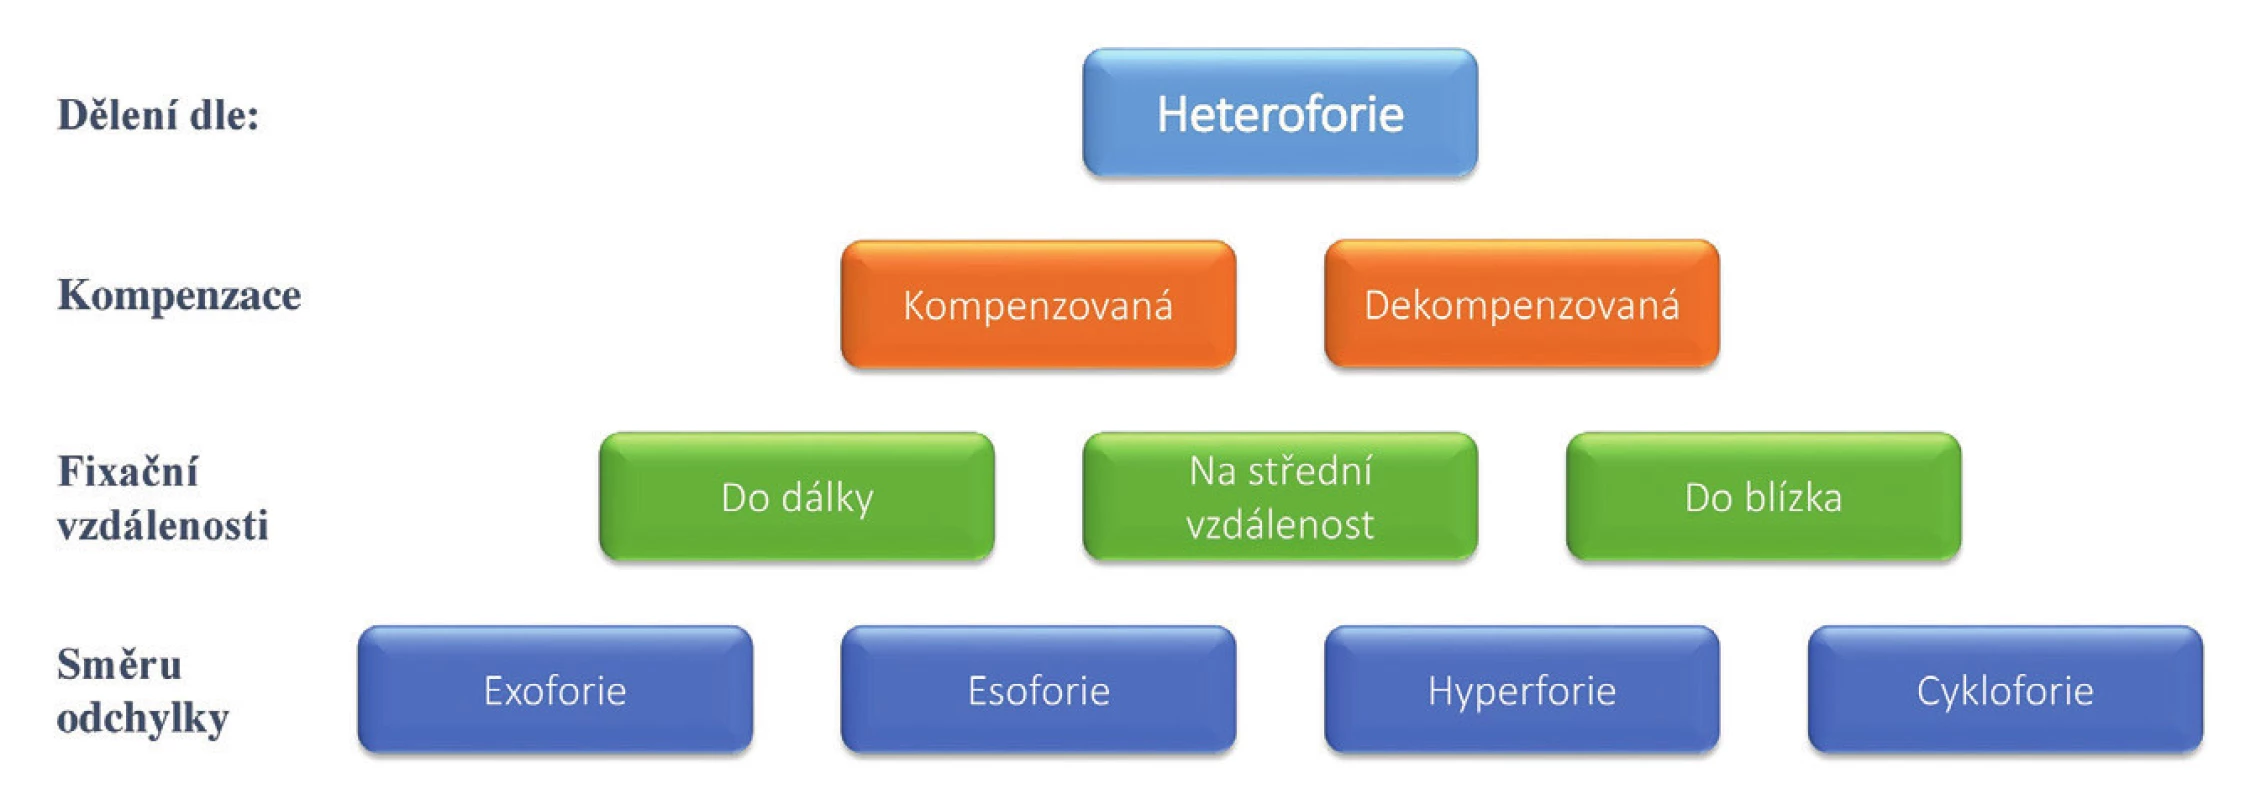 Klasifikace heteroforií dle způsobu kompenzace, fixační vzdálenosti a směru odchylky